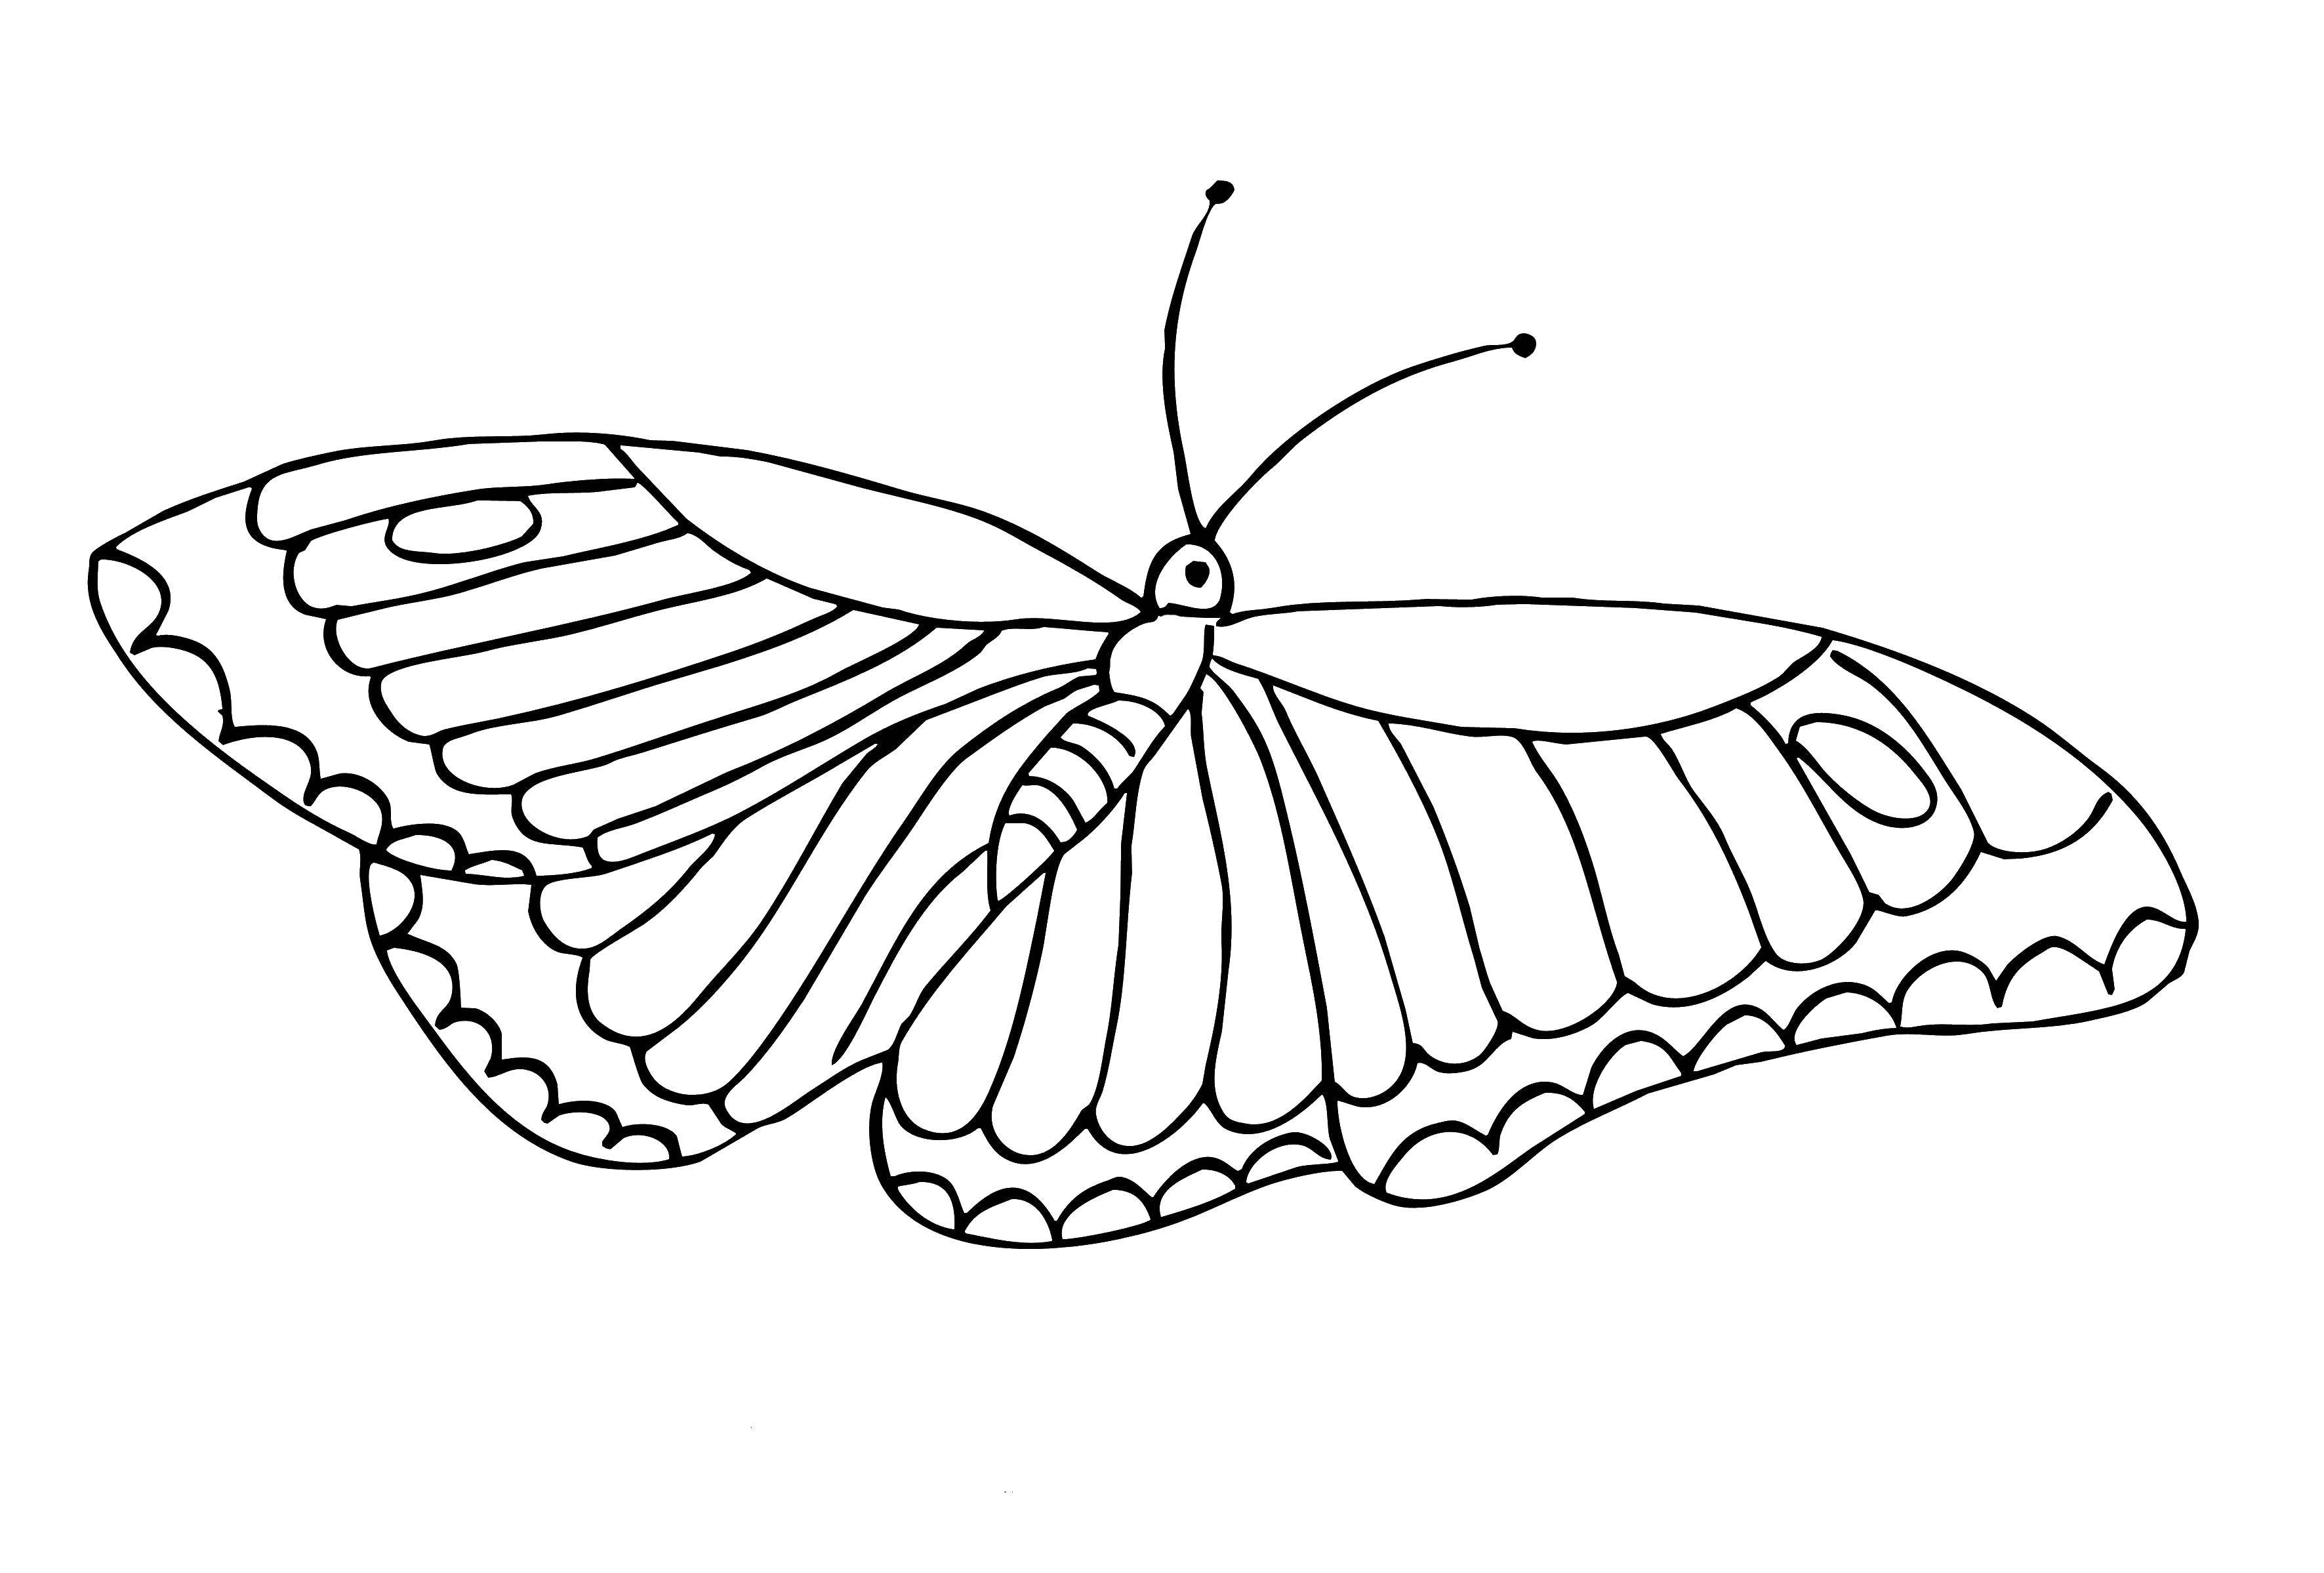 Раскраска из серии Бабочки